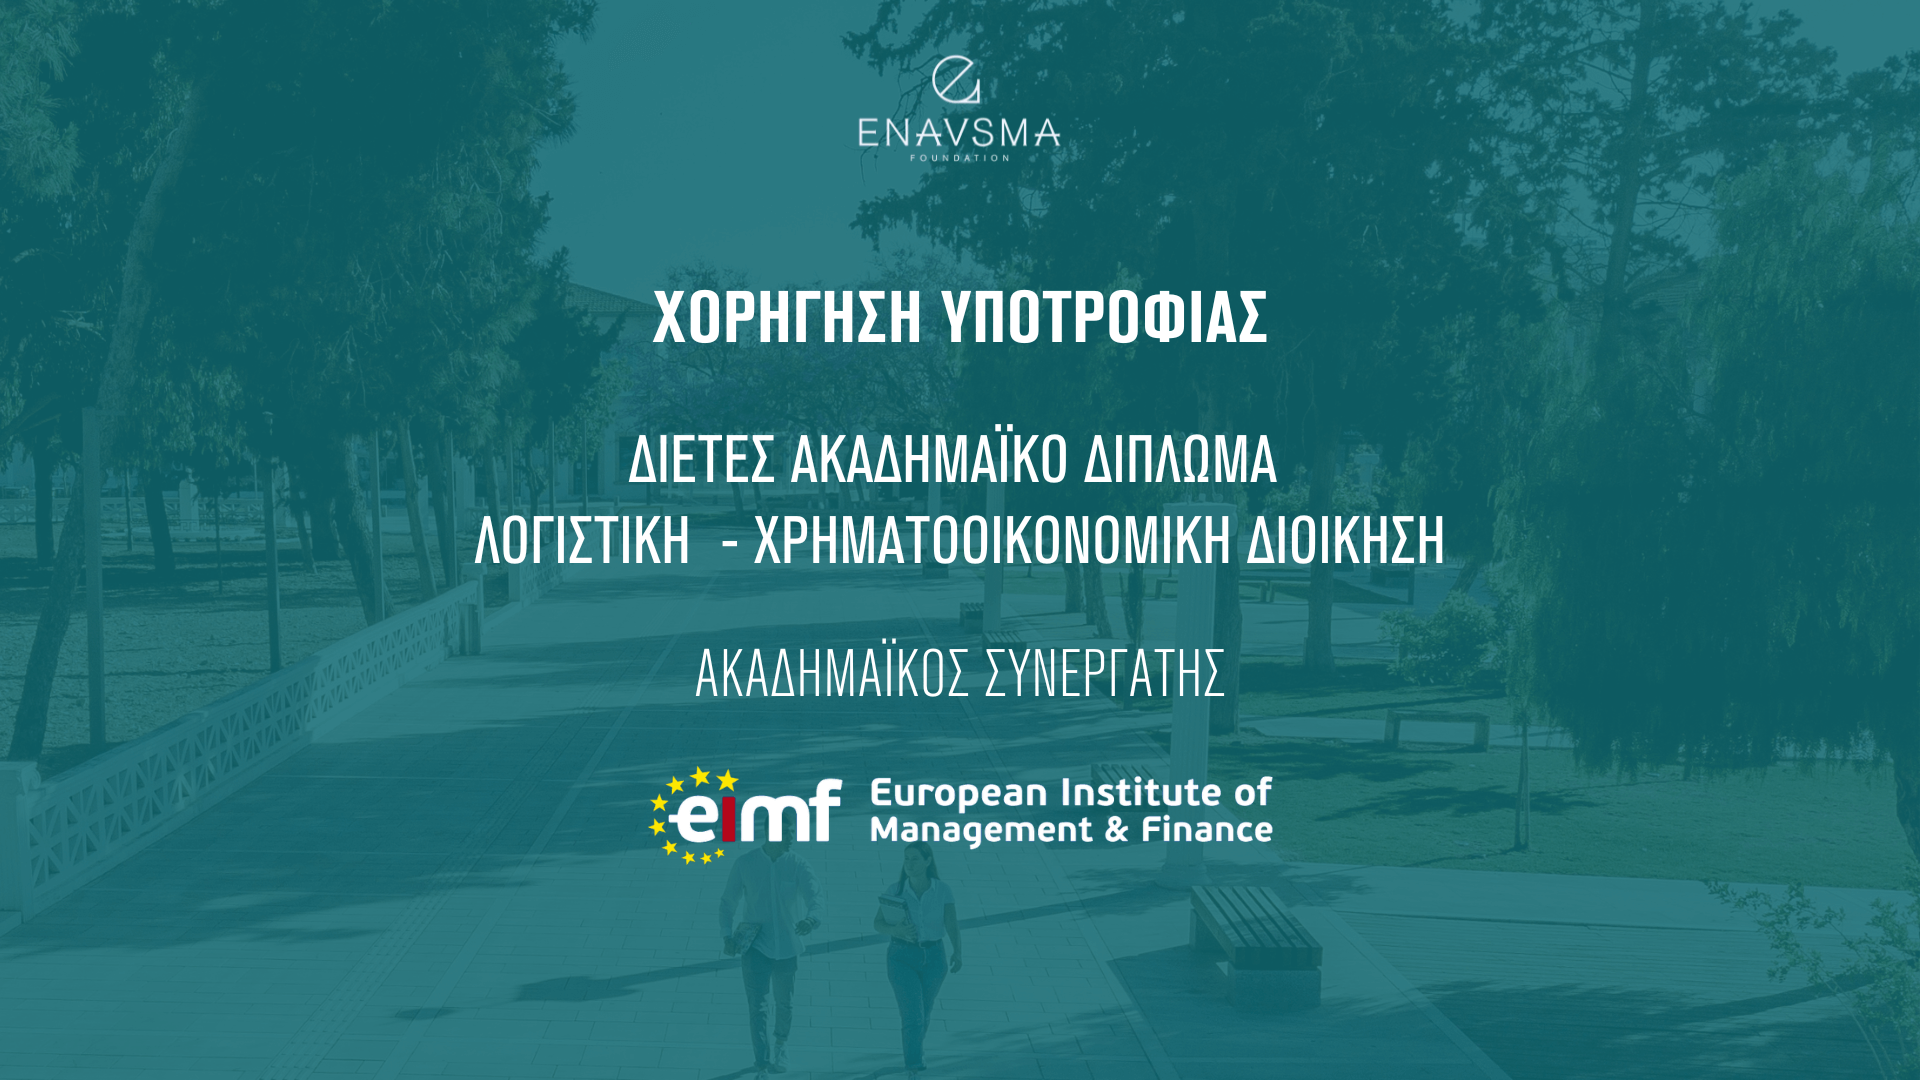 Συνεργασία με το European Institute of Management and Finance (EIMF) για παροχή υποτροφίας